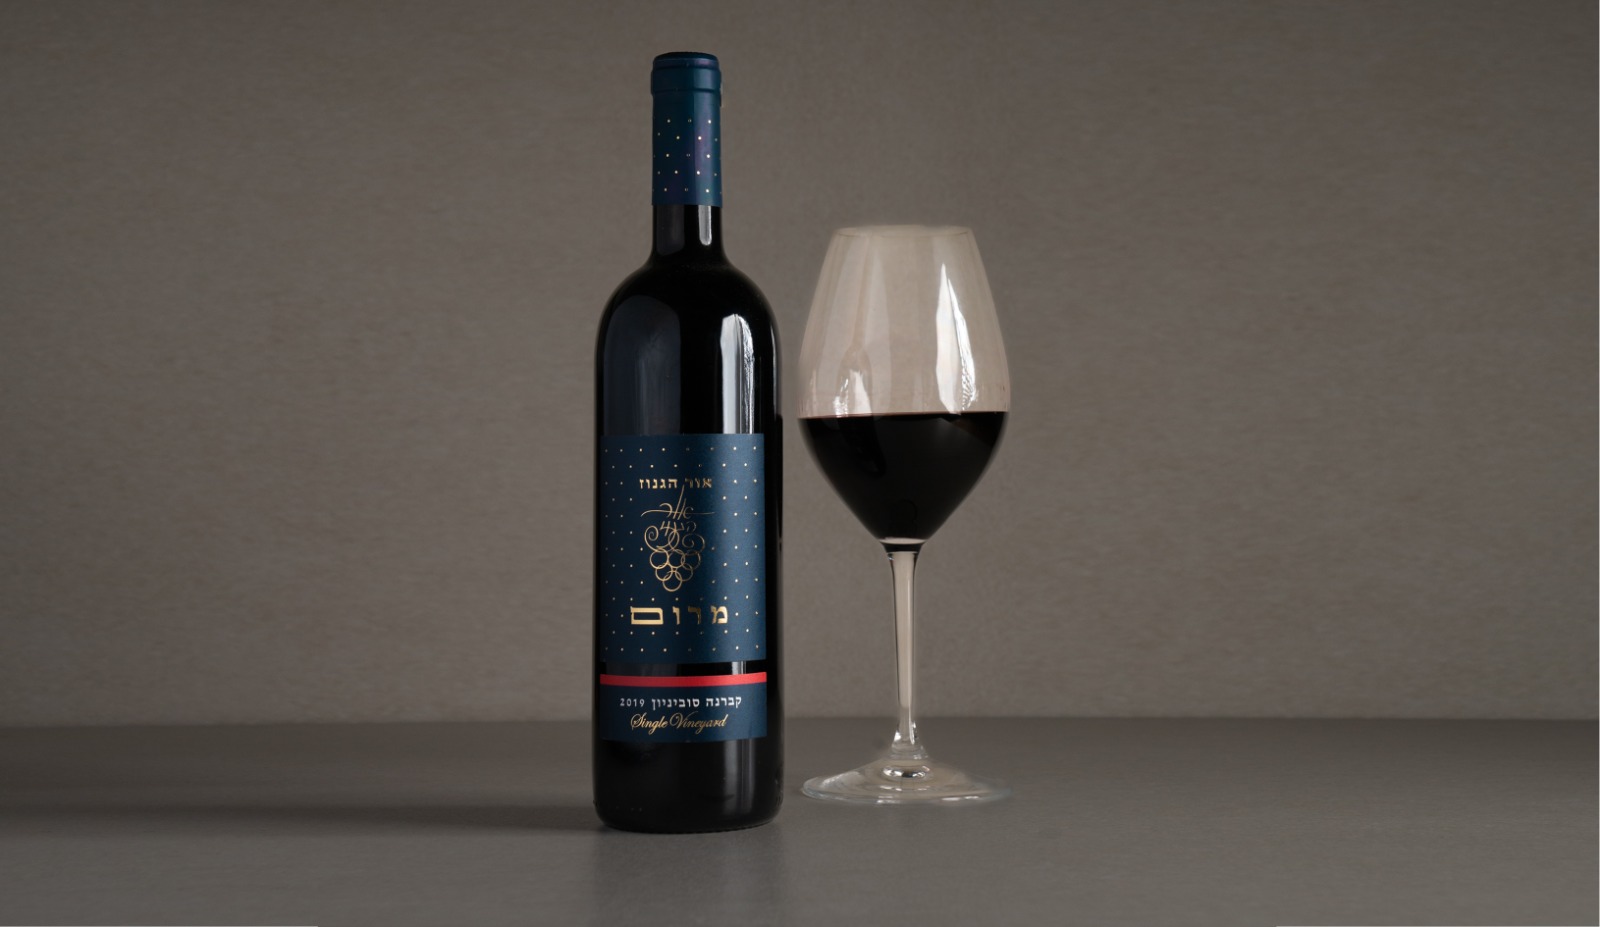 יין אדום יבש "אור הגנוז" מרום, קברנה סוביניון 2019 